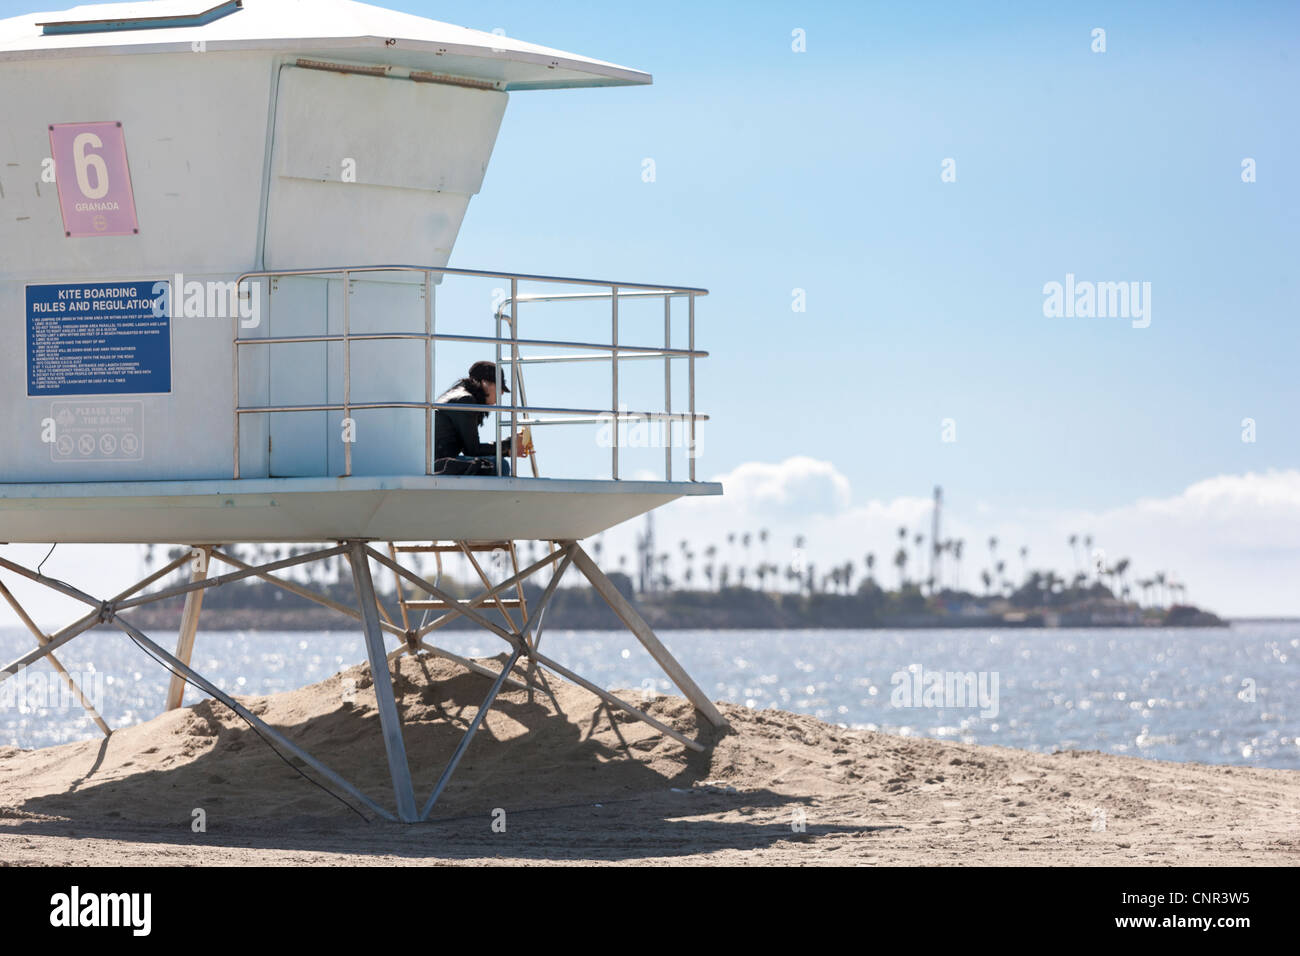 Leben bewachen Rettungsschwimmer Station Hütte in Long Beach Ca California mit Insel Chaffee einer Offshore-Bohrinsel verkleidet mit Palmen Stockfoto